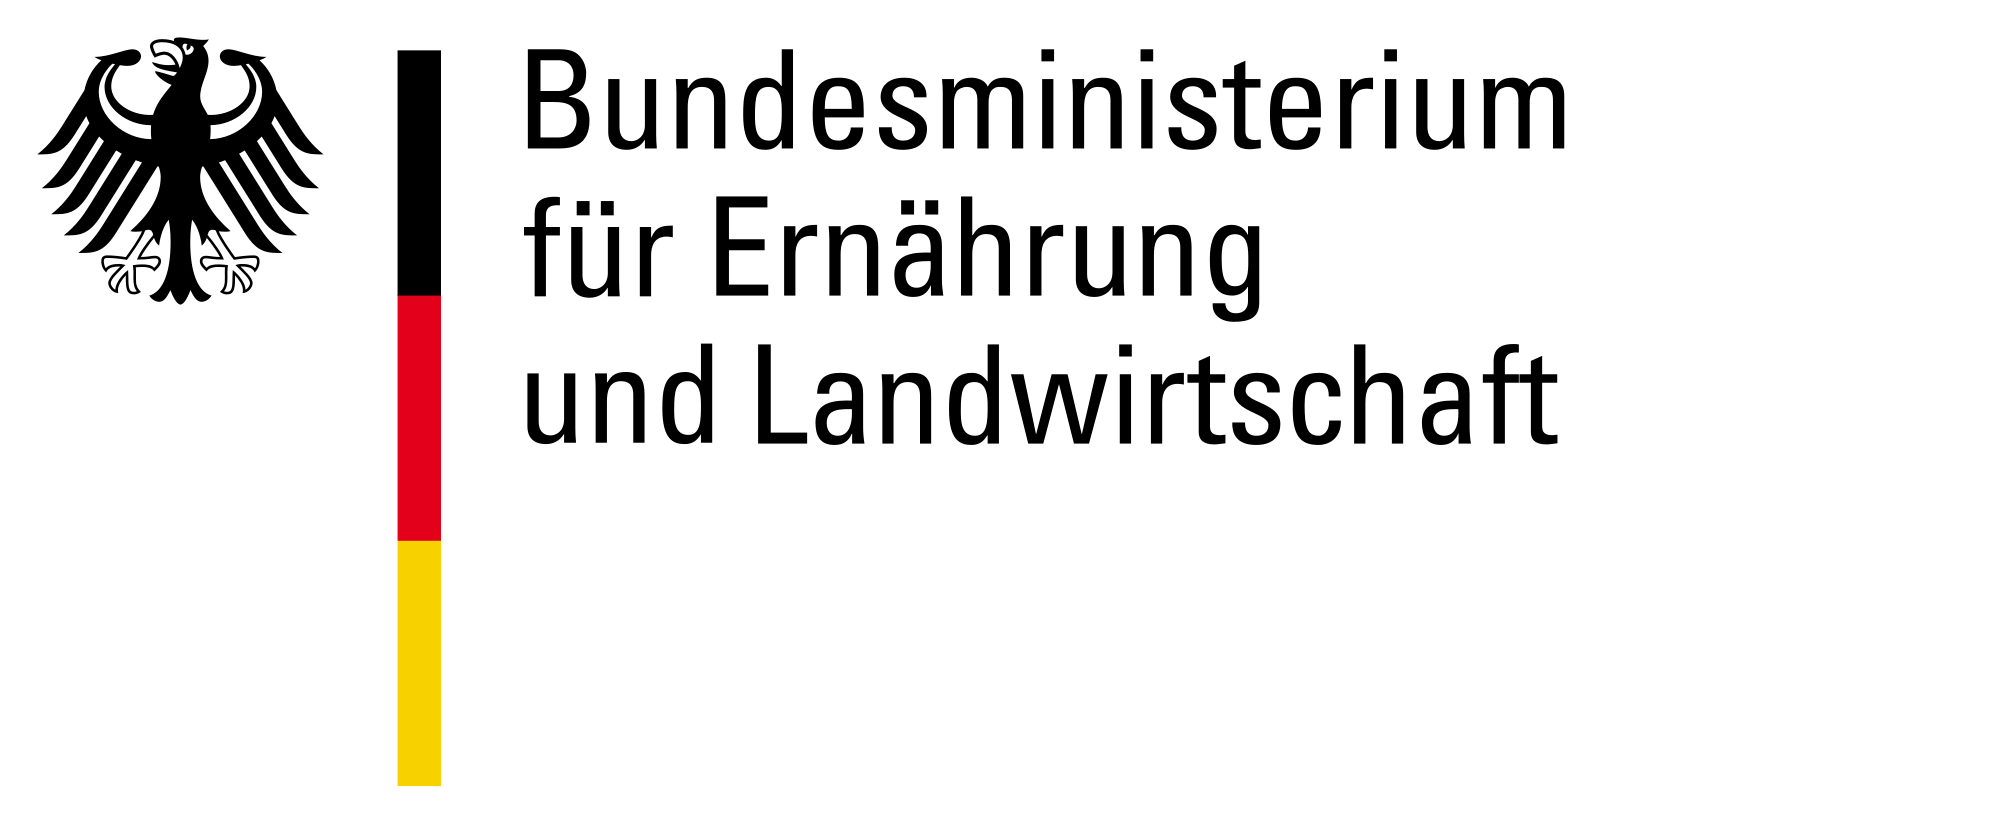 bmel logo svg